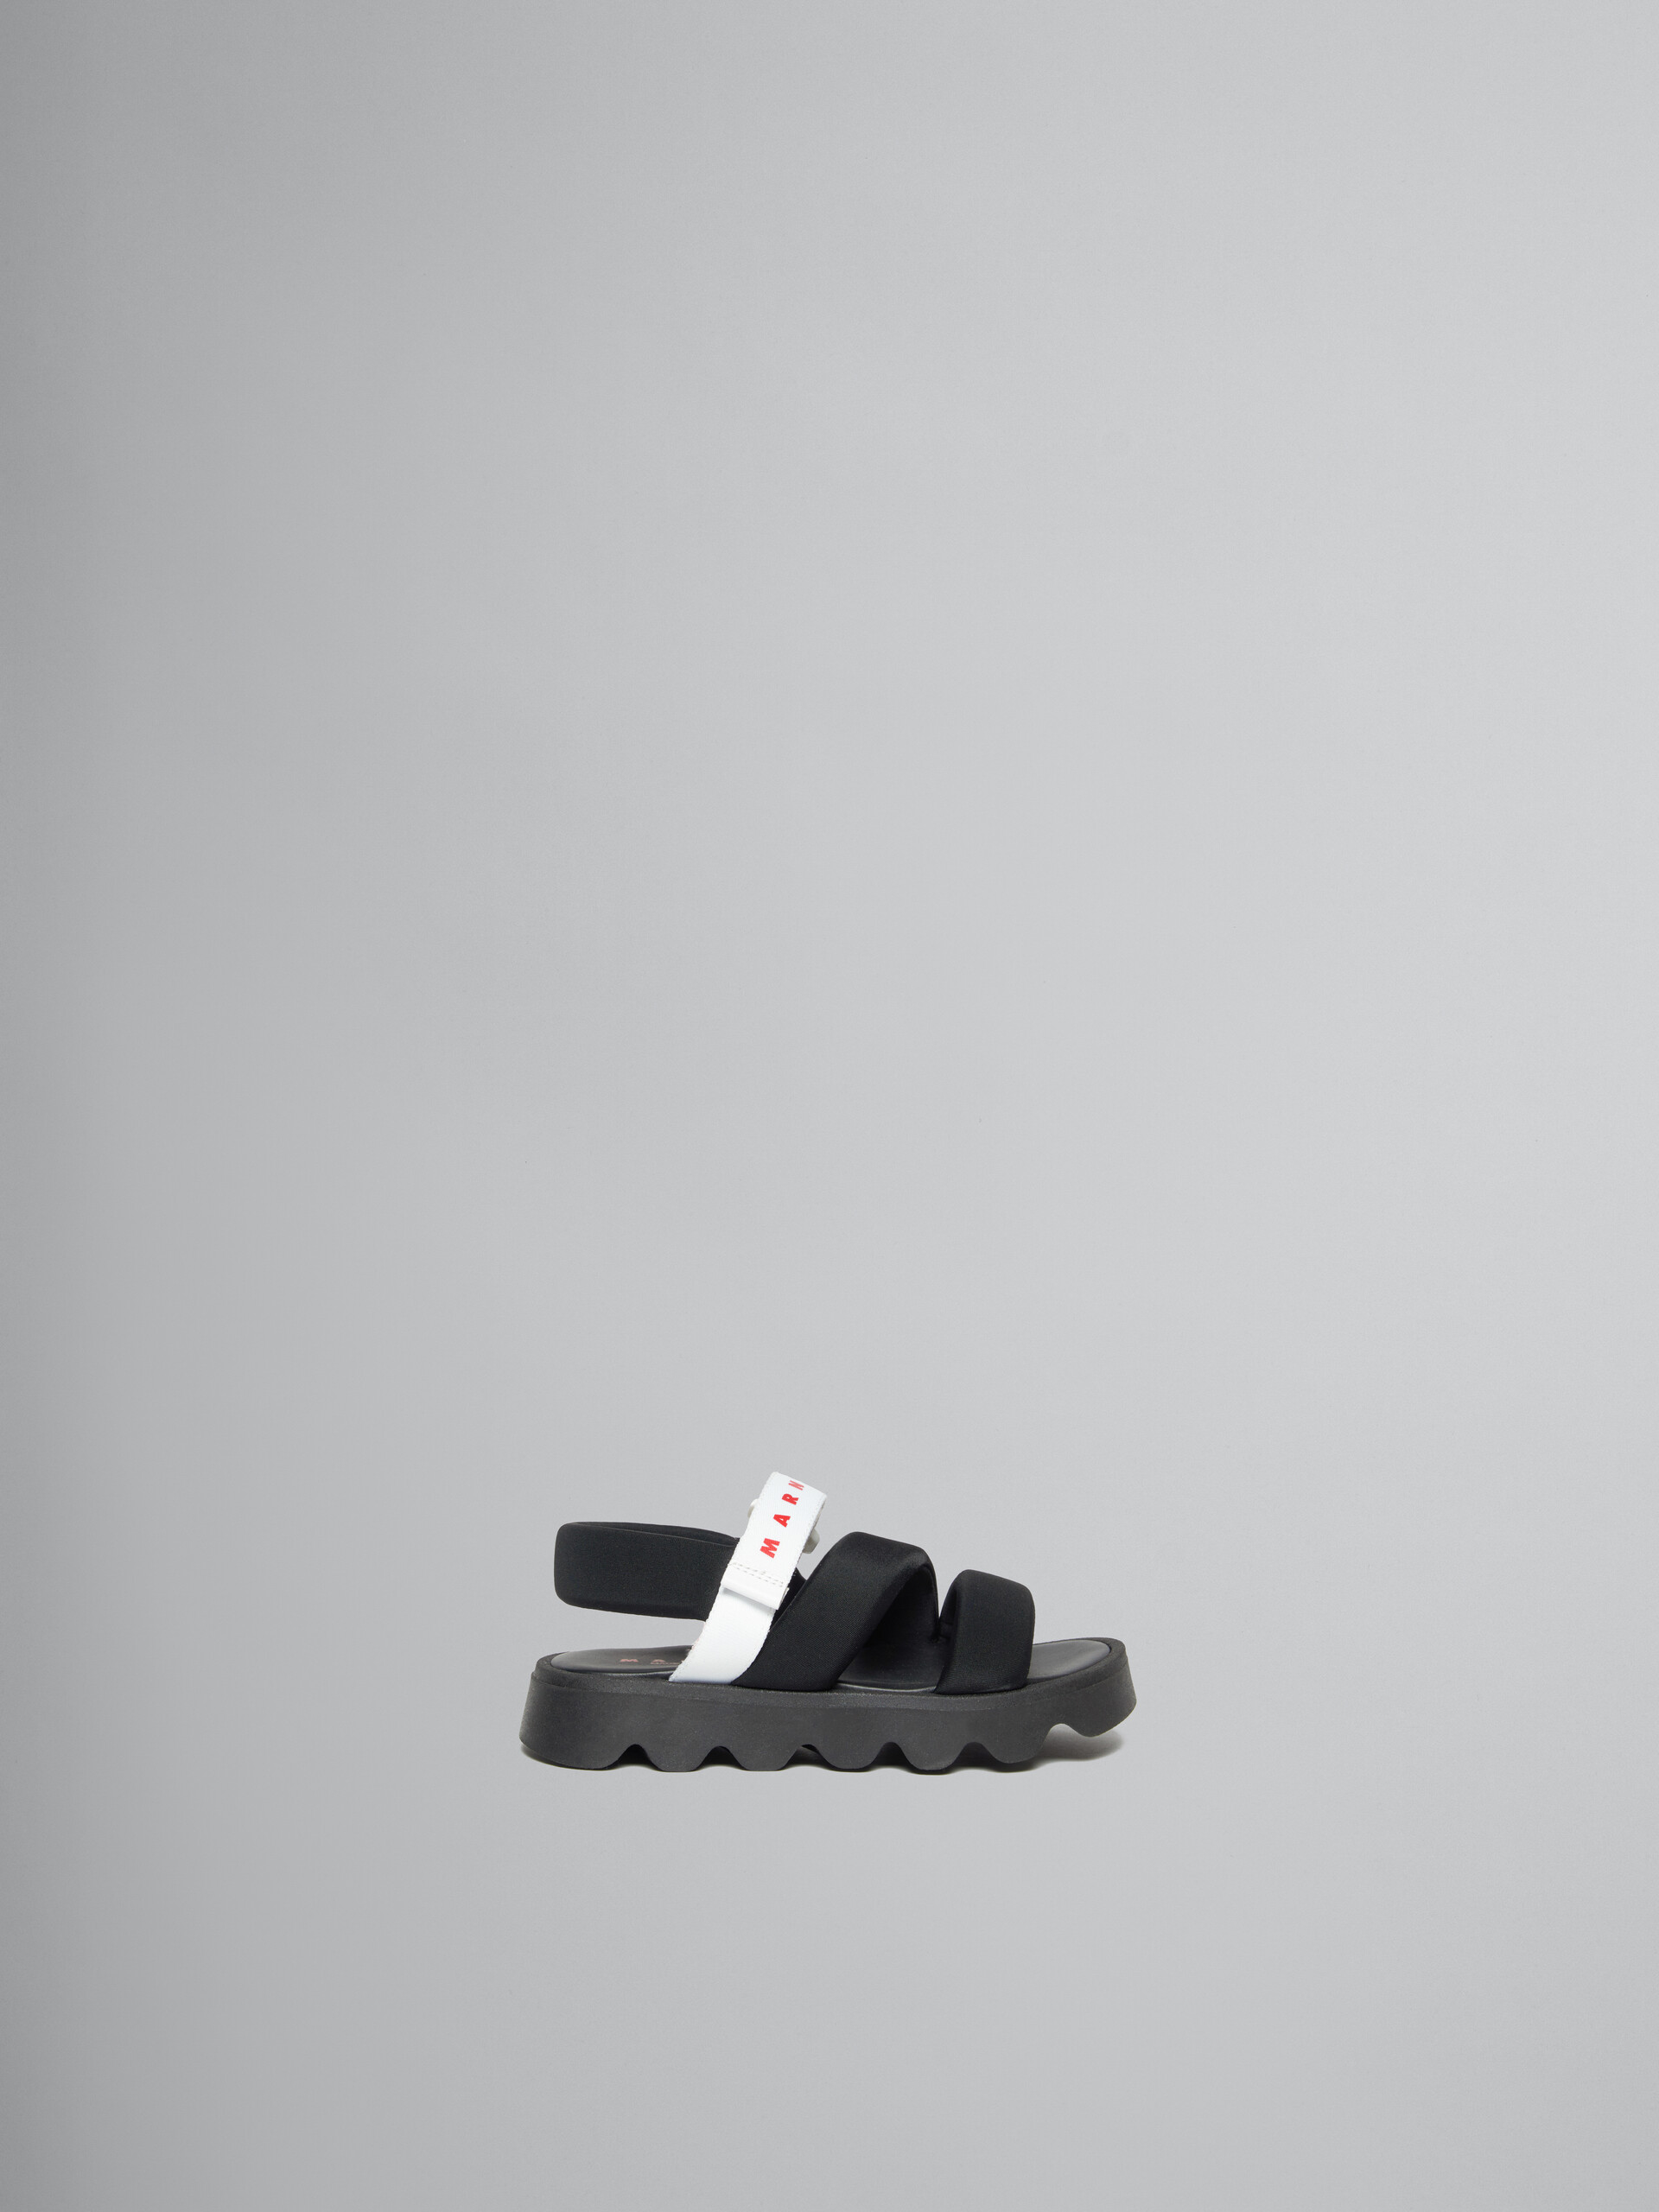 Sandales matelassé noir - ENFANT - Image 1